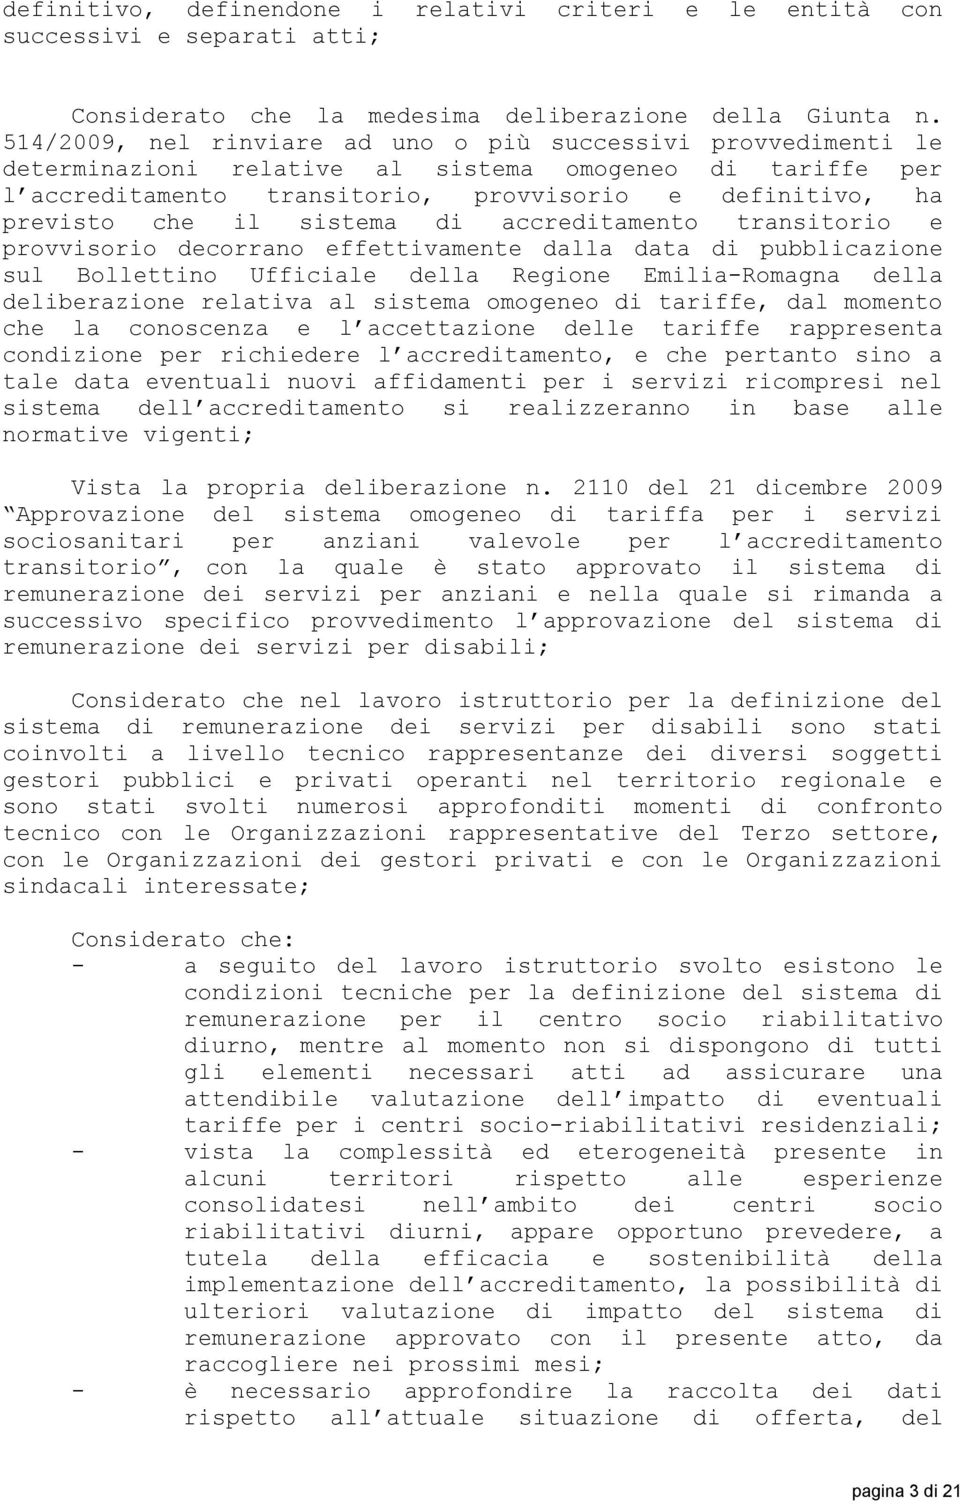 sistema di accreditamento transitorio e provvisorio decorrano effettivamente dalla data di pubblicazione sul Bollettino Ufficiale della Regione Emilia-Romagna della deliberazione relativa al sistema